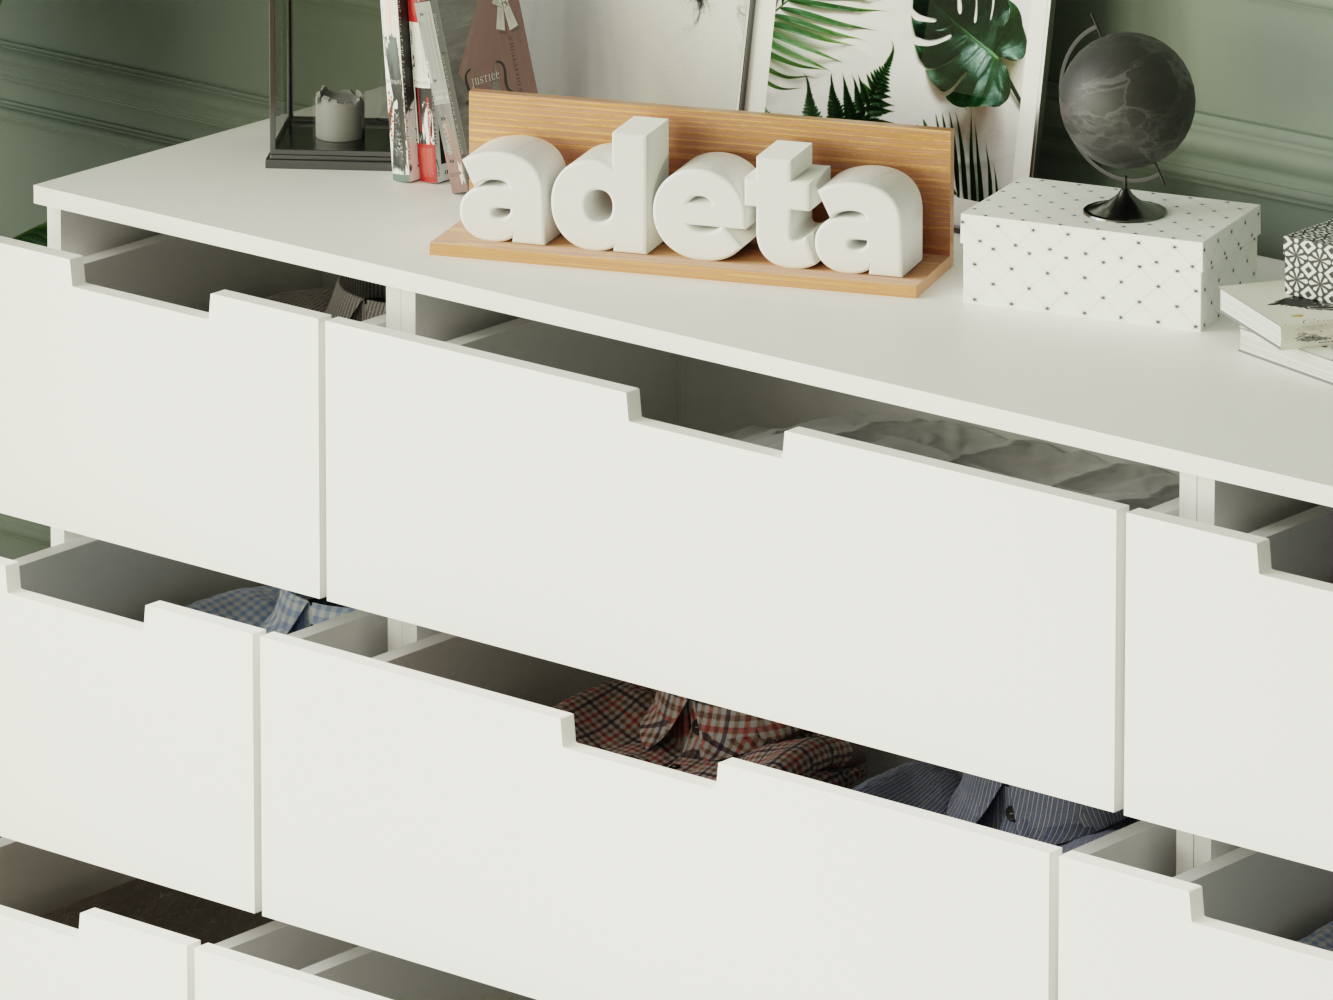  Комод Нордли 25 white ИКЕА (IKEA) изображение товара